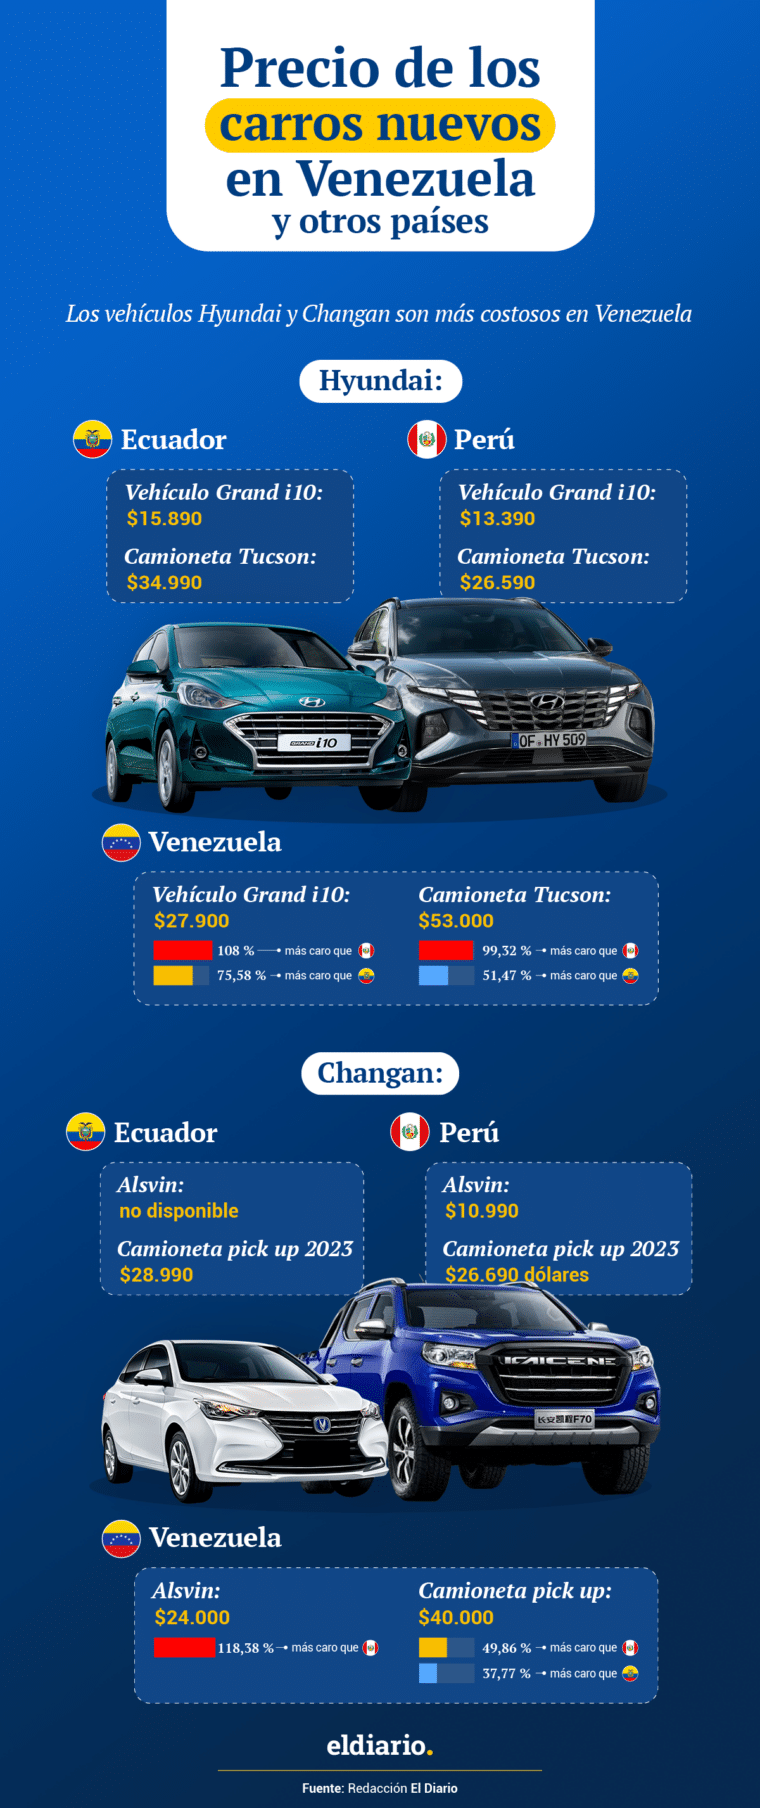 ¿Cuánto cuestan los carros nuevos en Venezuela y qué opciones de financiamiento hay?